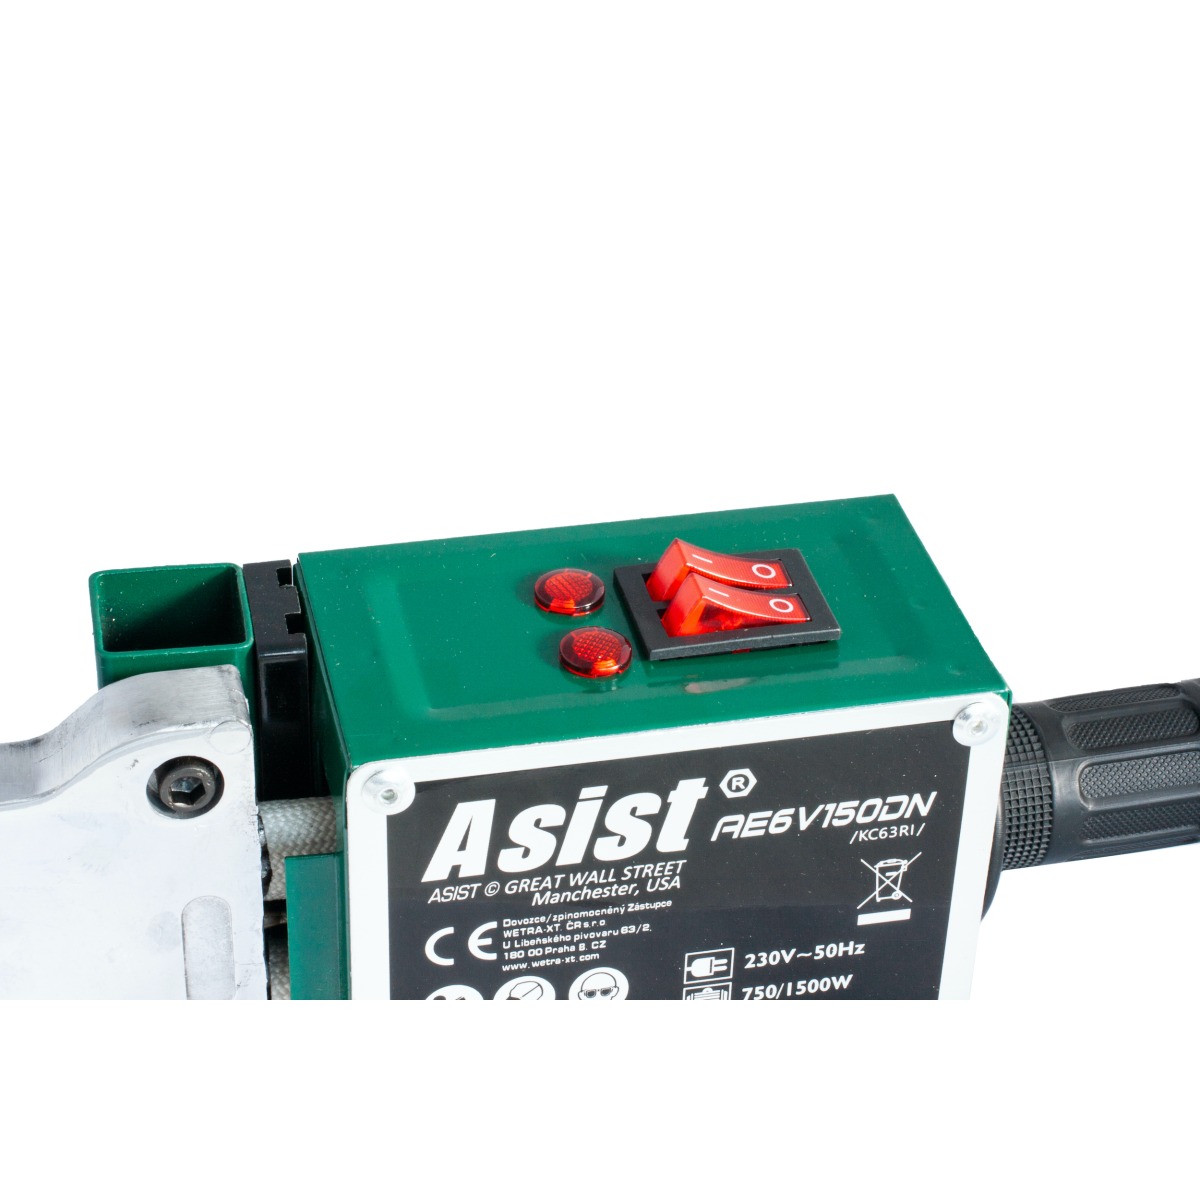 Svářečka plastových trubek ASIST AE6V150DN